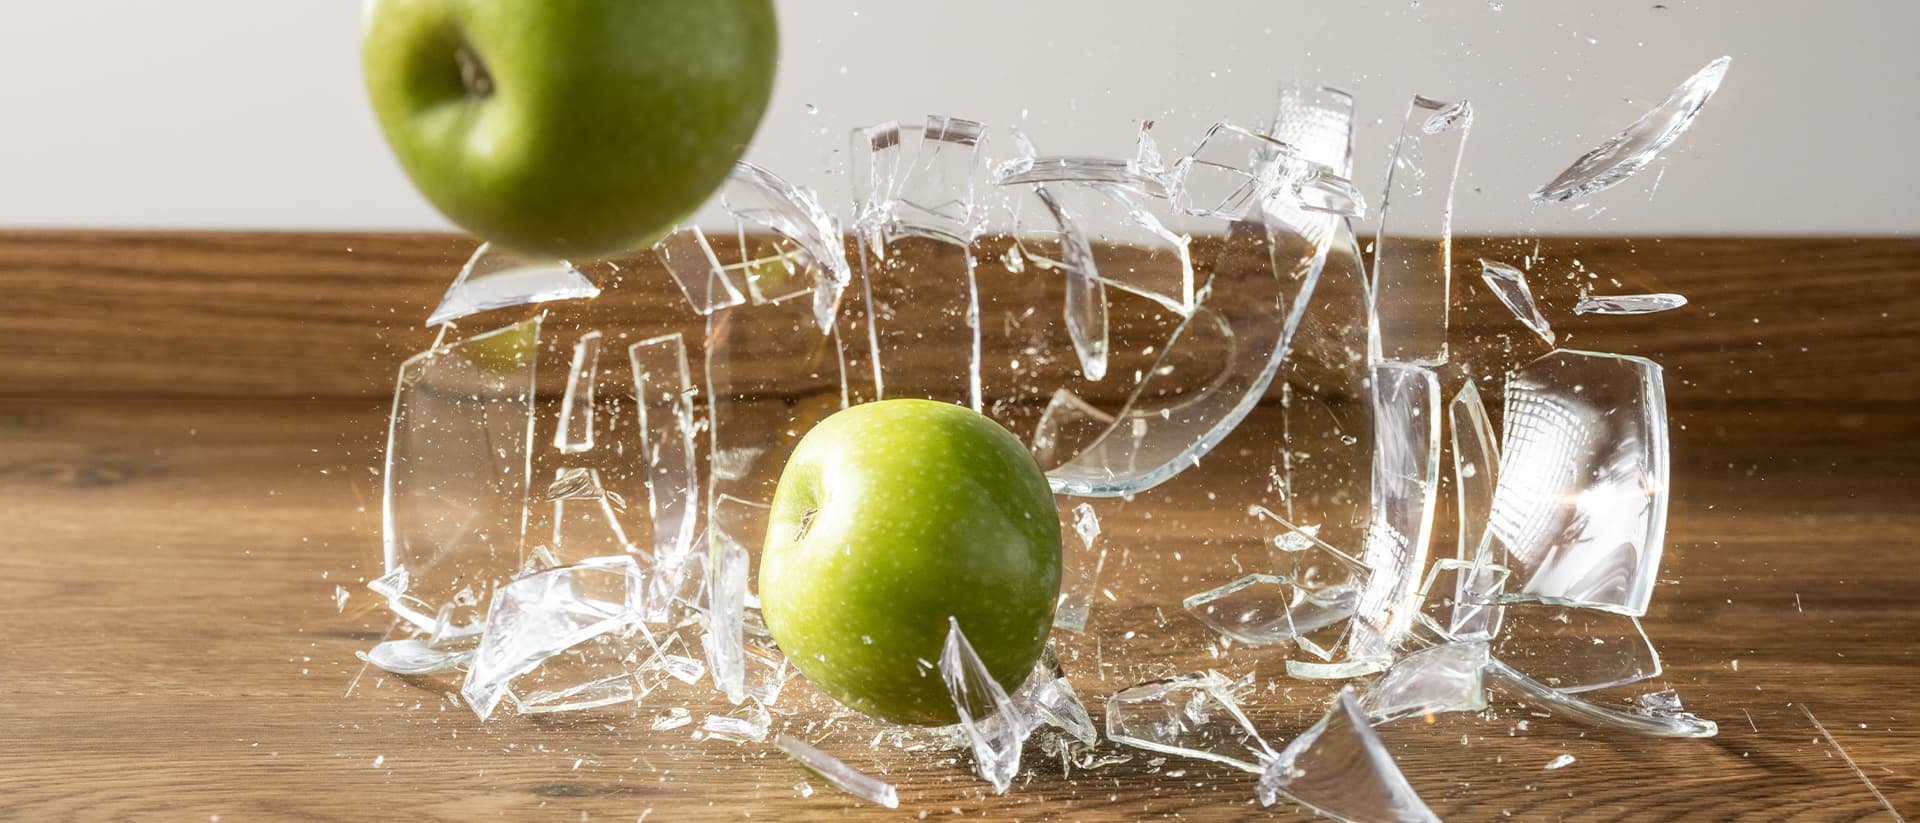 omenoilla täytetty lasimaljakko putoaa ruskealle vinyylilattialle ja hajoaa